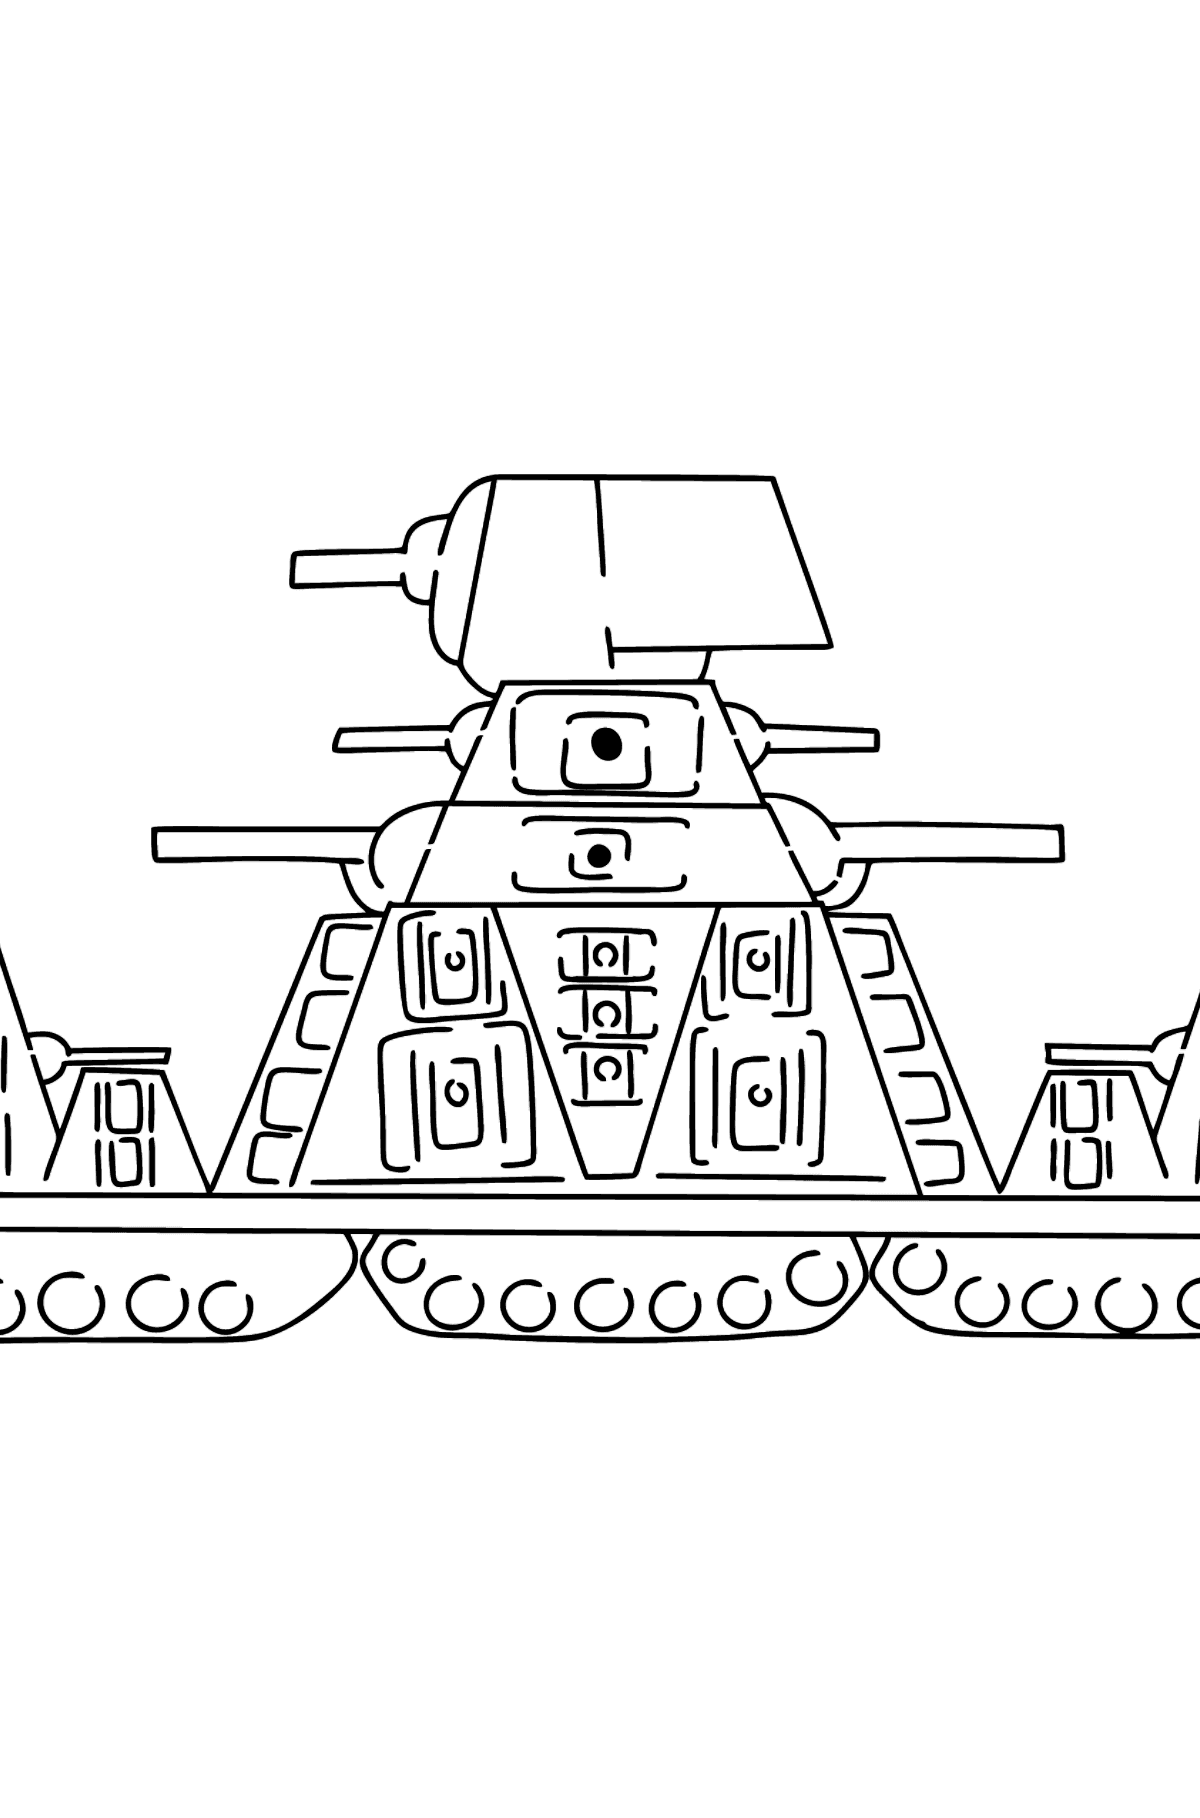 Boyama sayfası tankı KV-44 - Boyamalar çocuklar için